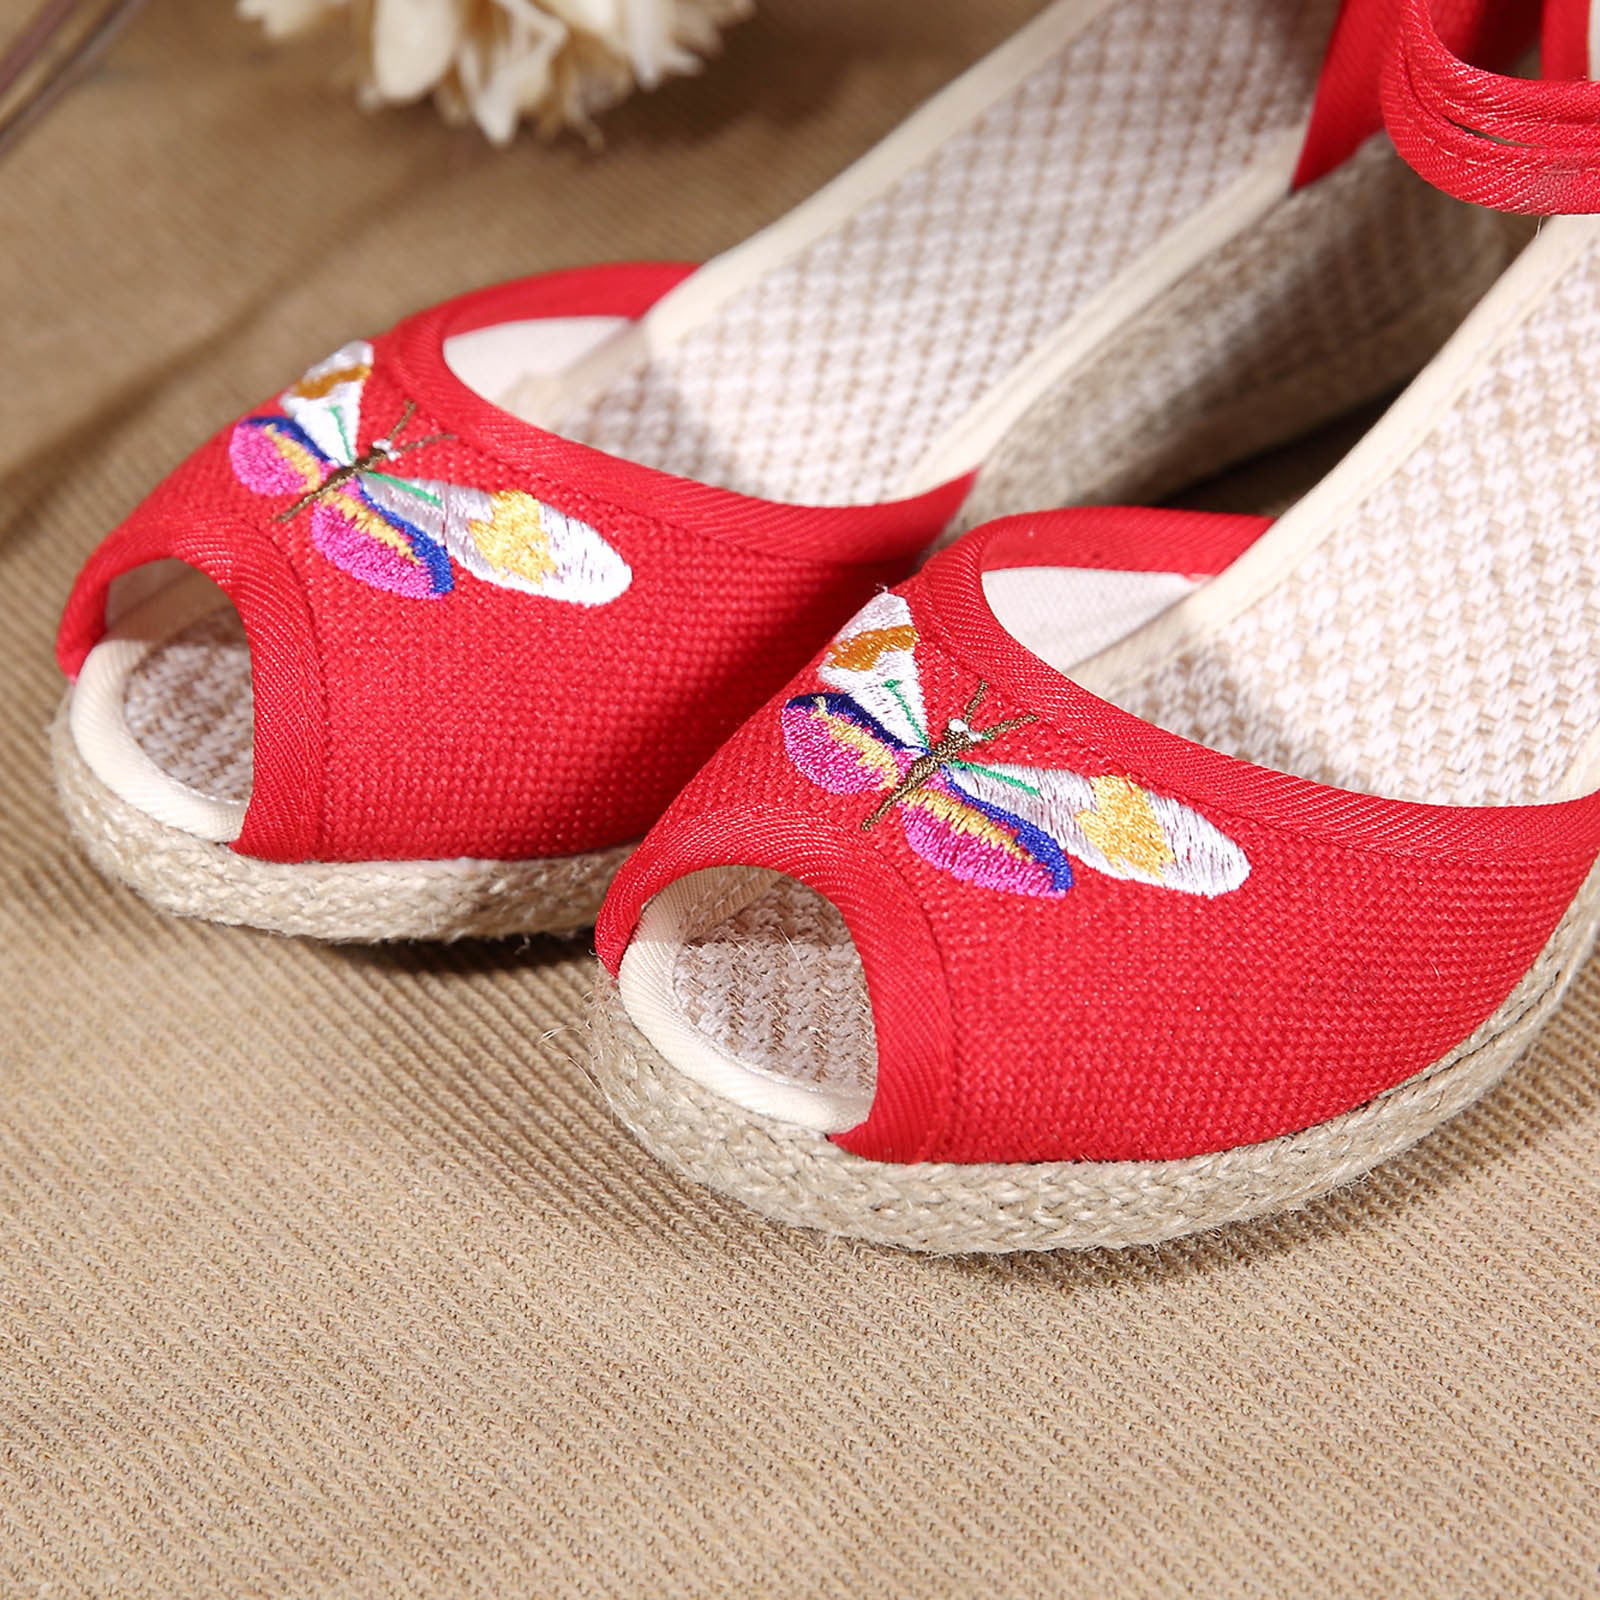 kpoplk Sandals For Women Dressy Summer,Women's Open Toe Ankle Strap ...